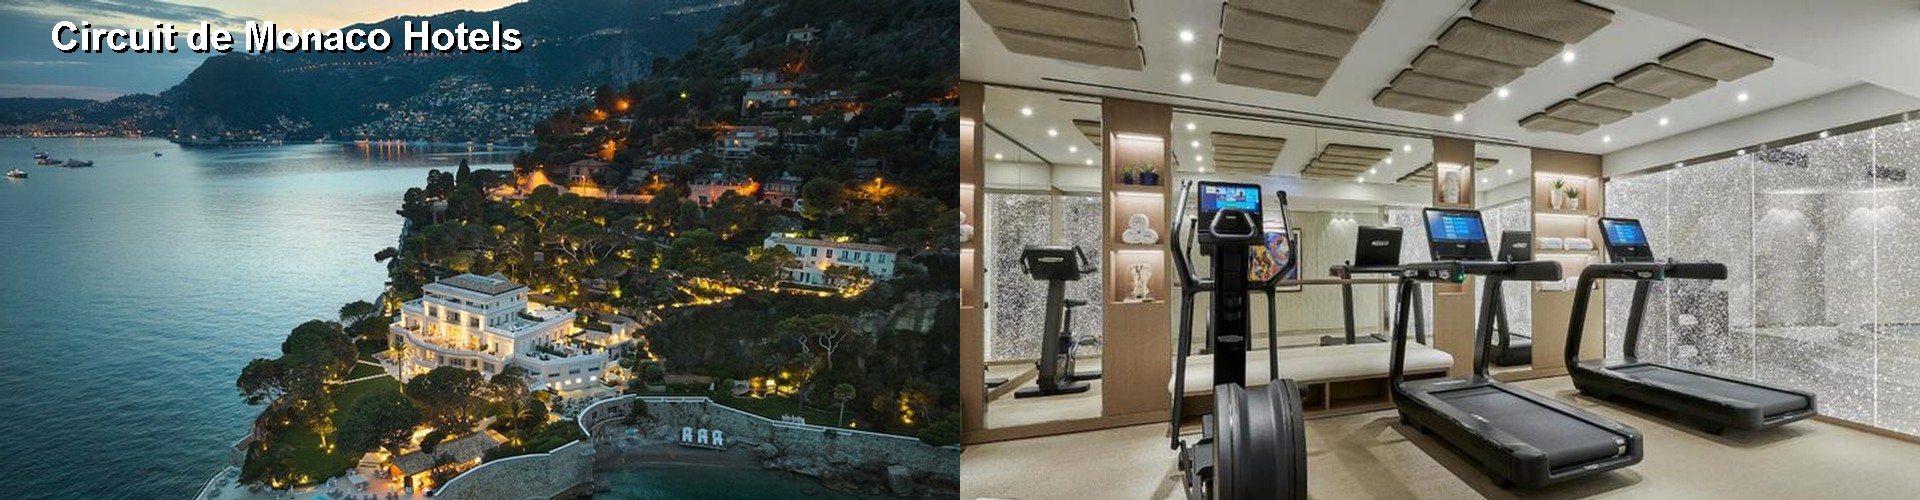 5 Best Hotels near Circuit de Monaco